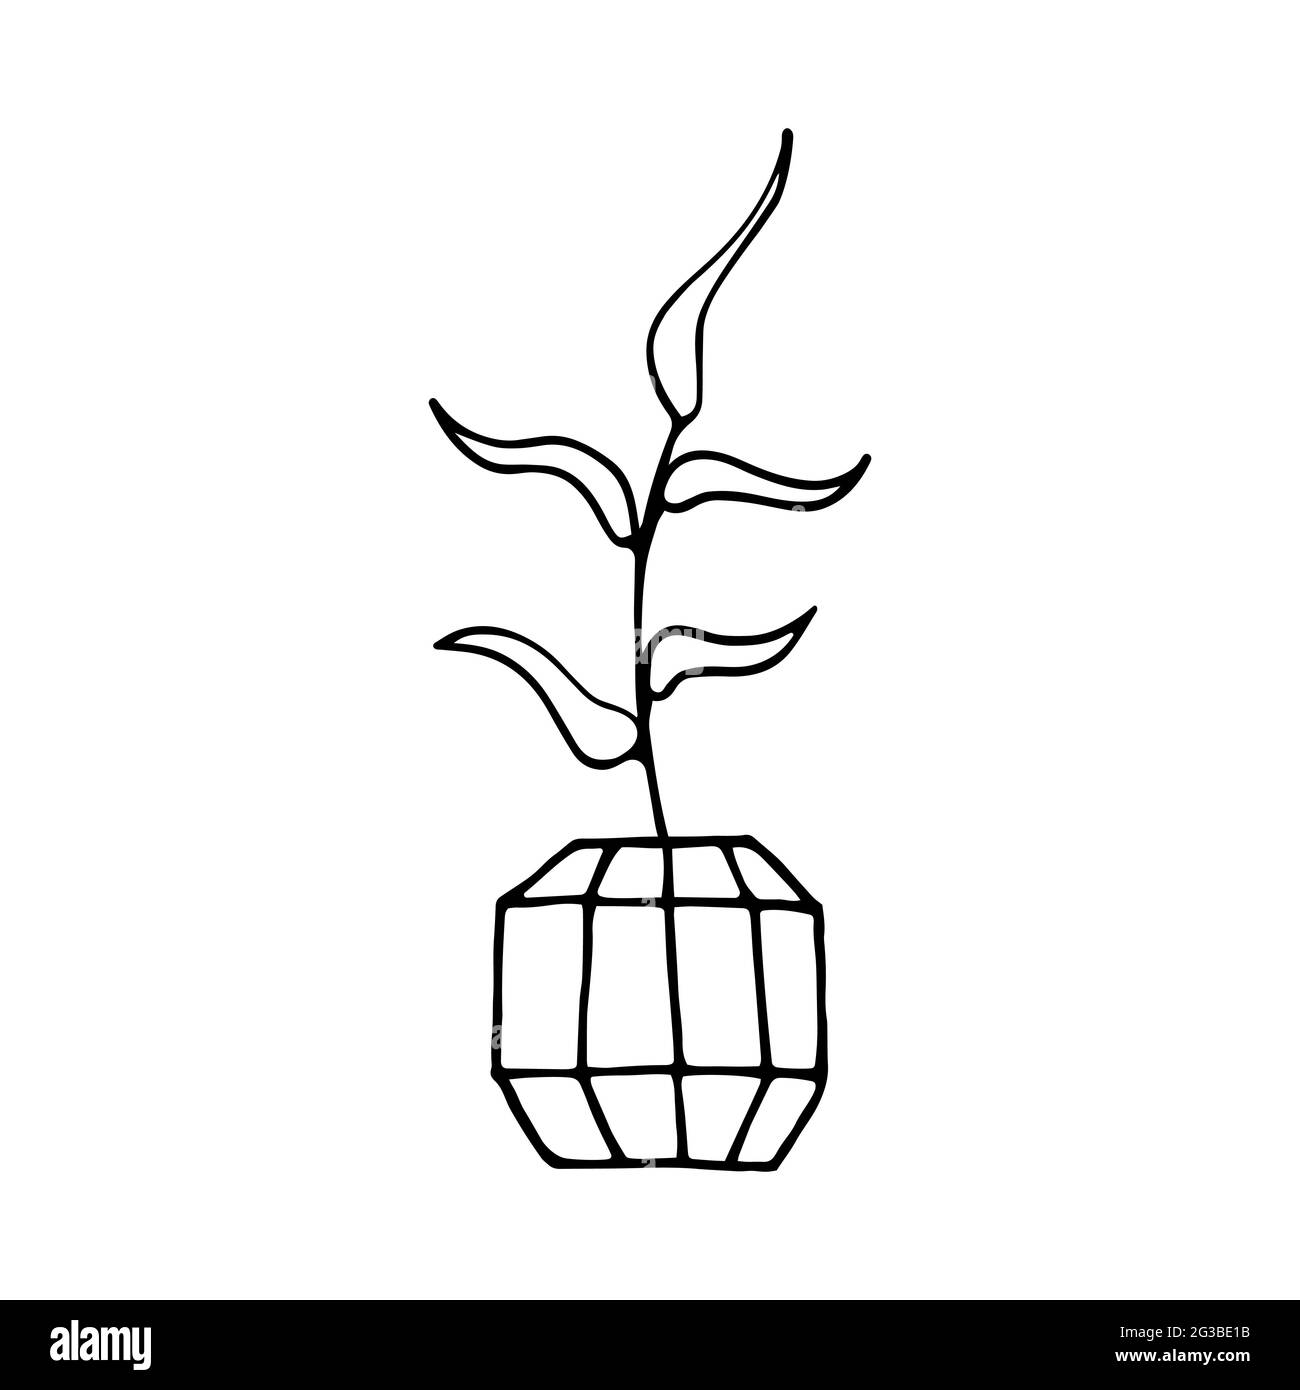 Doodle pianta in una pentola sfaccettata. Foglie disegnate a mano con vaso di fiori di polietilene. Contorno nero di una pianta domestica isolata su uno sfondo bianco. Carino scandinavo Illustrazione Vettoriale